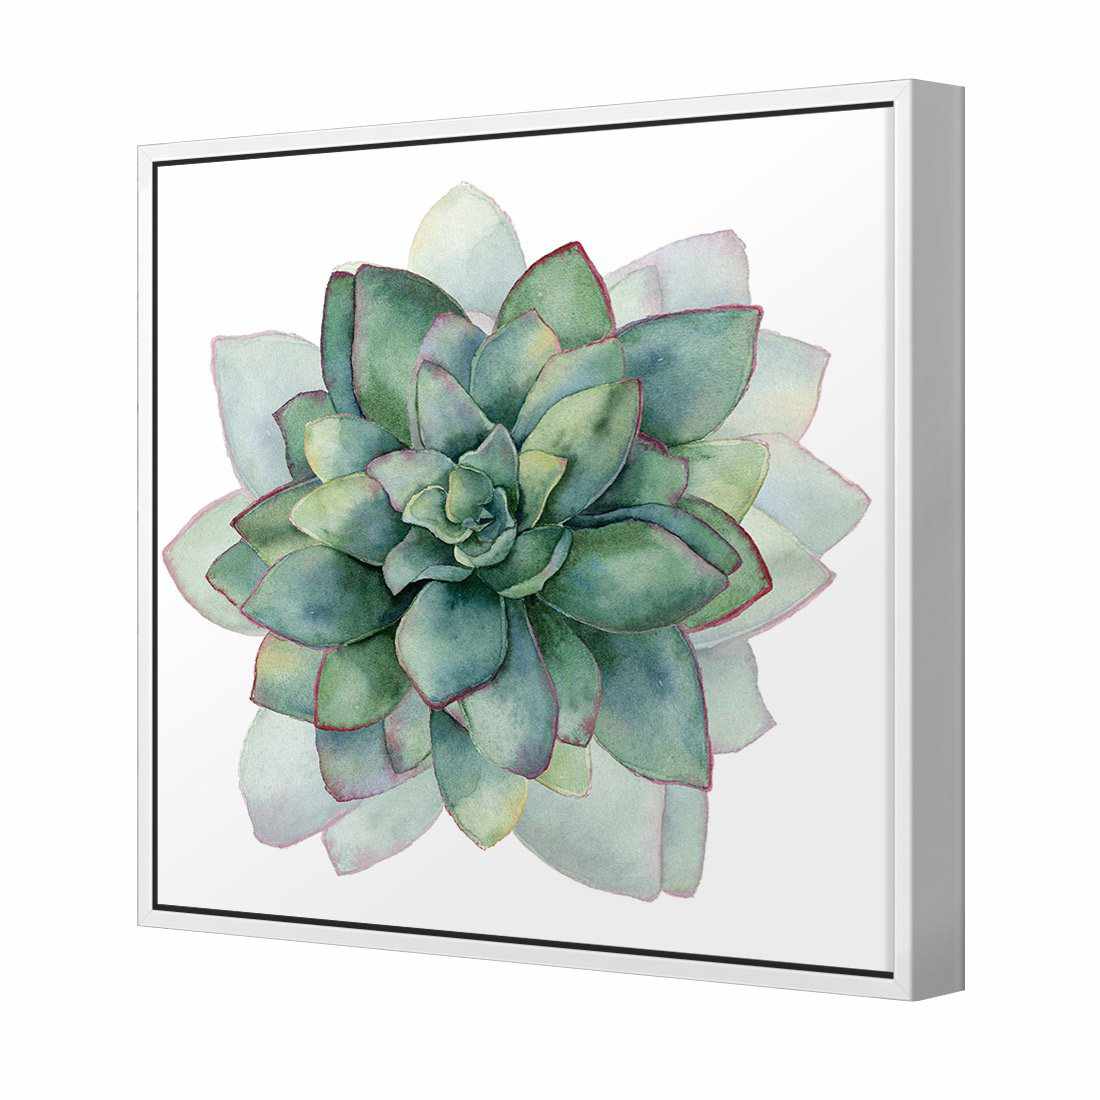 Succulent Spiral Canvas Art-Canvas-Wall Art Designs-30x30cm-Canvas - White Frame-Wall Art Designs